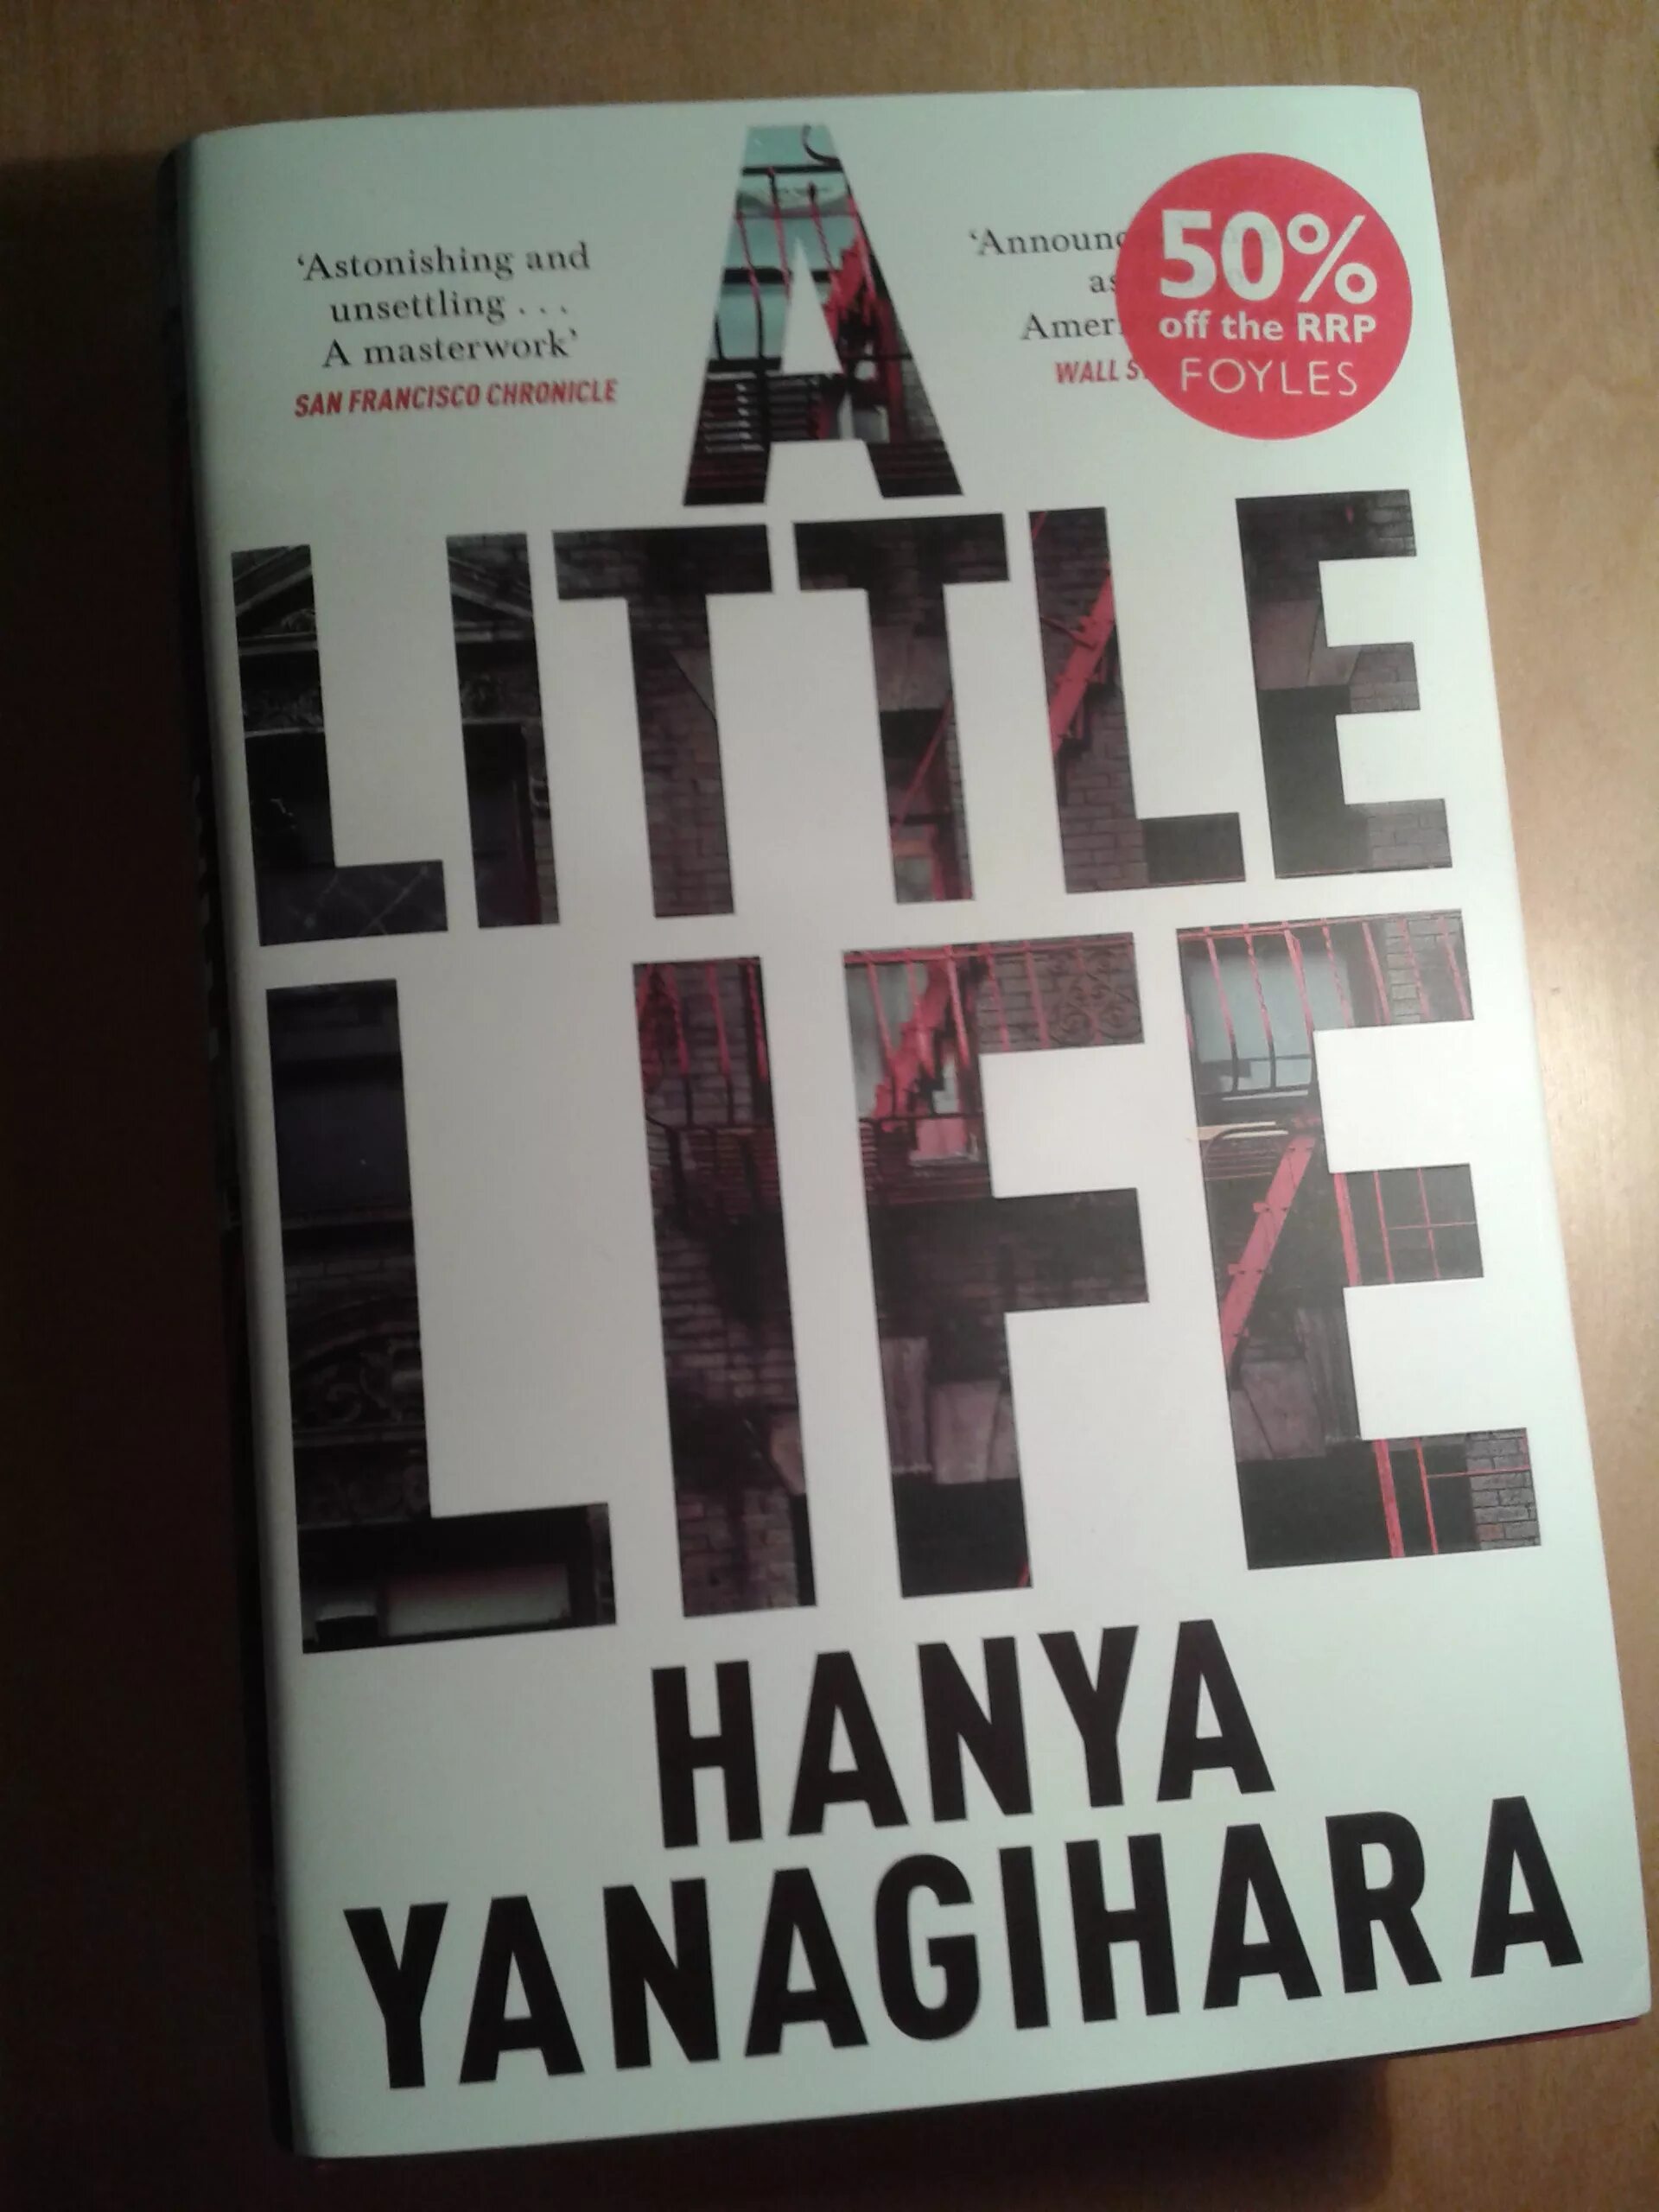 A little life книга. A little Life hanya Yanagihara. The little Life hanya Yanagihara обложка. A little Life Cover.